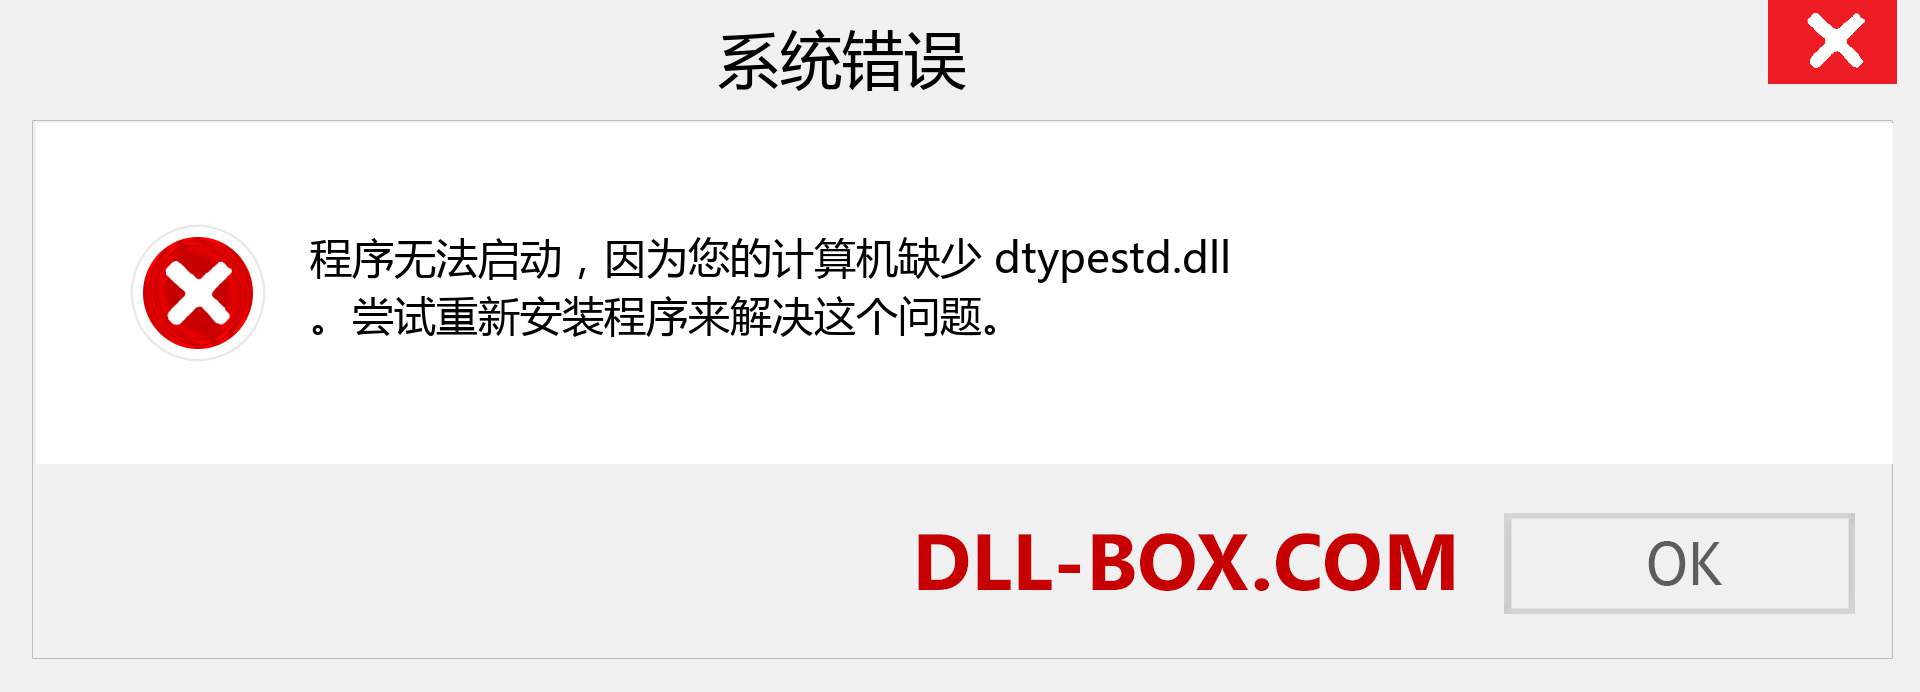 dtypestd.dll 文件丢失？。 适用于 Windows 7、8、10 的下载 - 修复 Windows、照片、图像上的 dtypestd dll 丢失错误